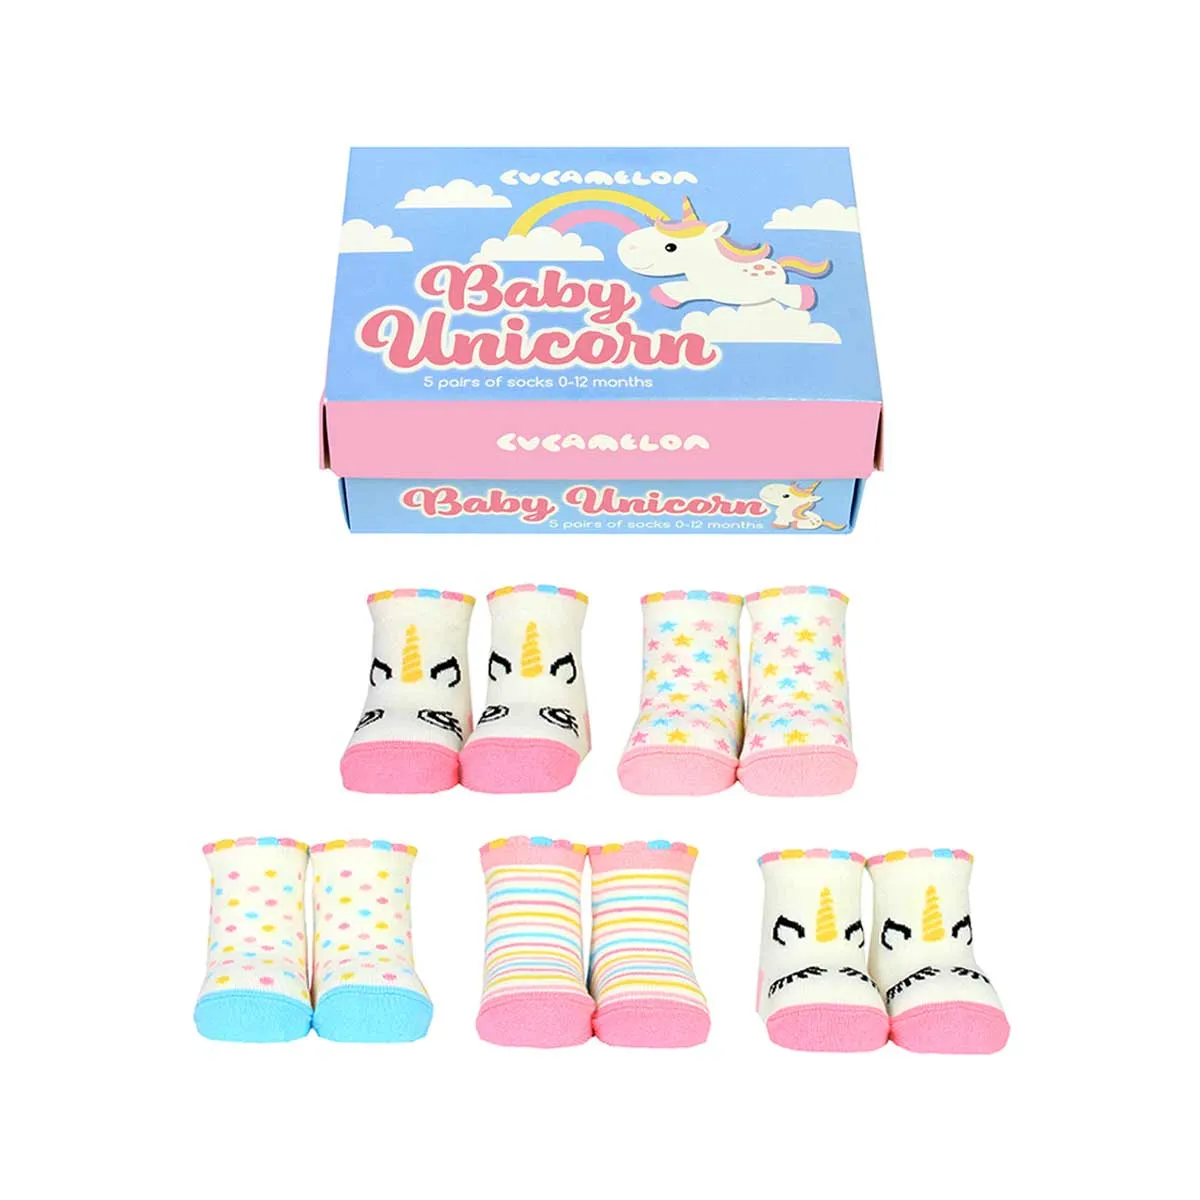 Adorables chaussettes pour bébé au design licorne